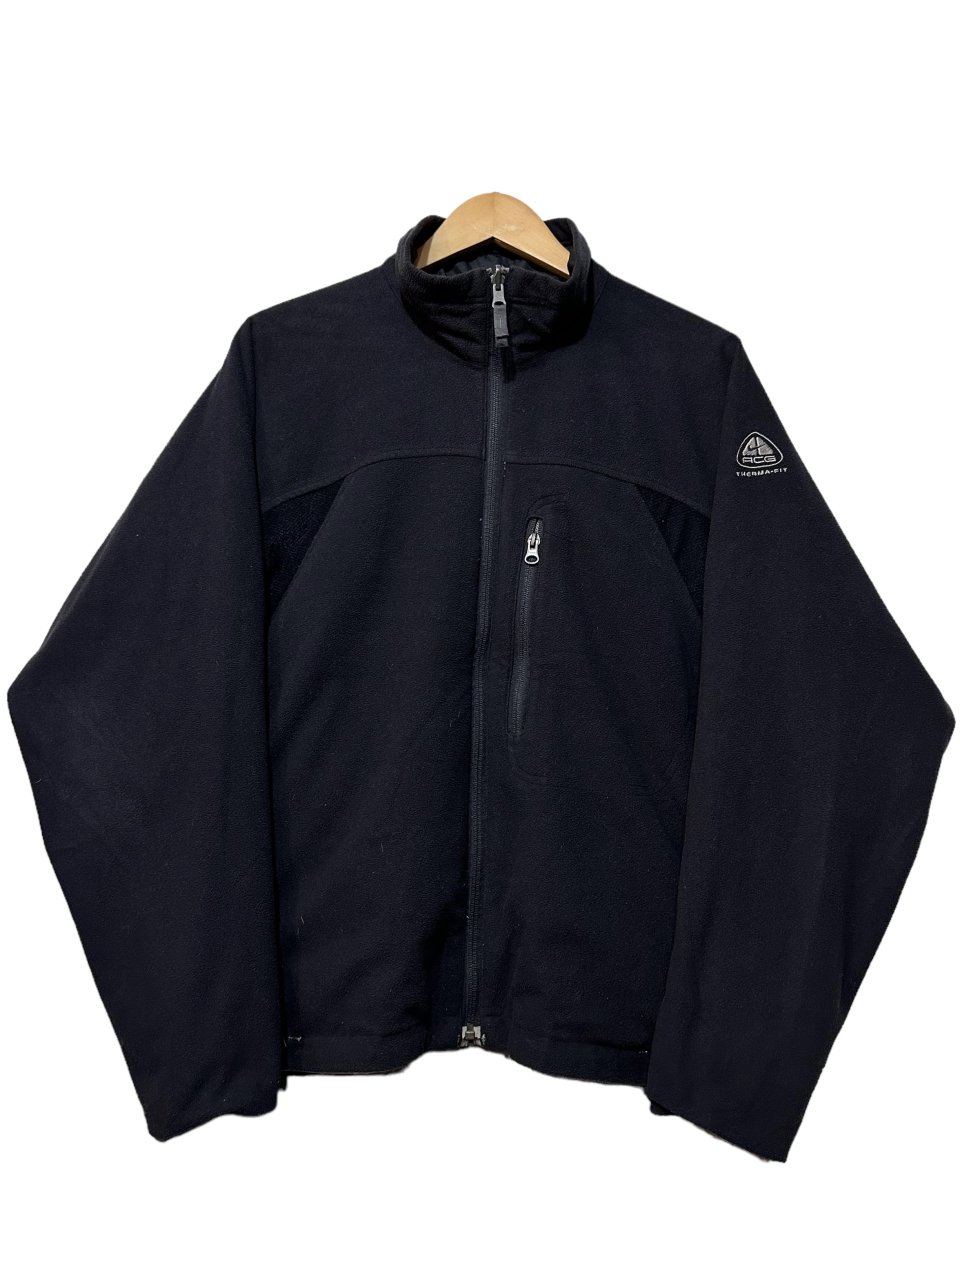 02年製 NIKE ACG Nylon × Fleece Reversible Jacket 黒灰 M 00s ナイキ